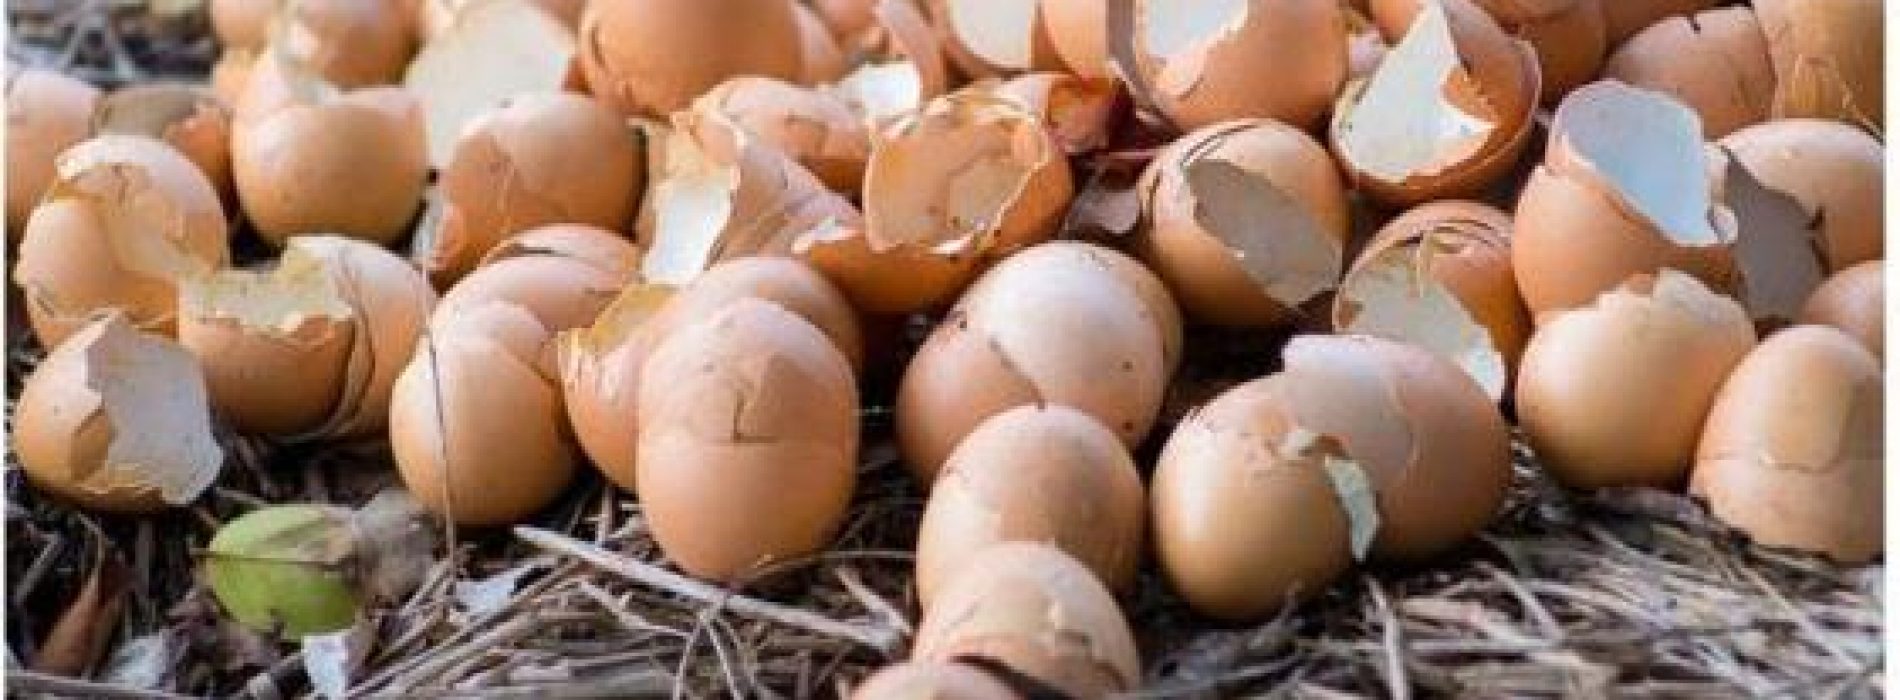 6 Briljante toepassingen voor eierschalen in uw tuin